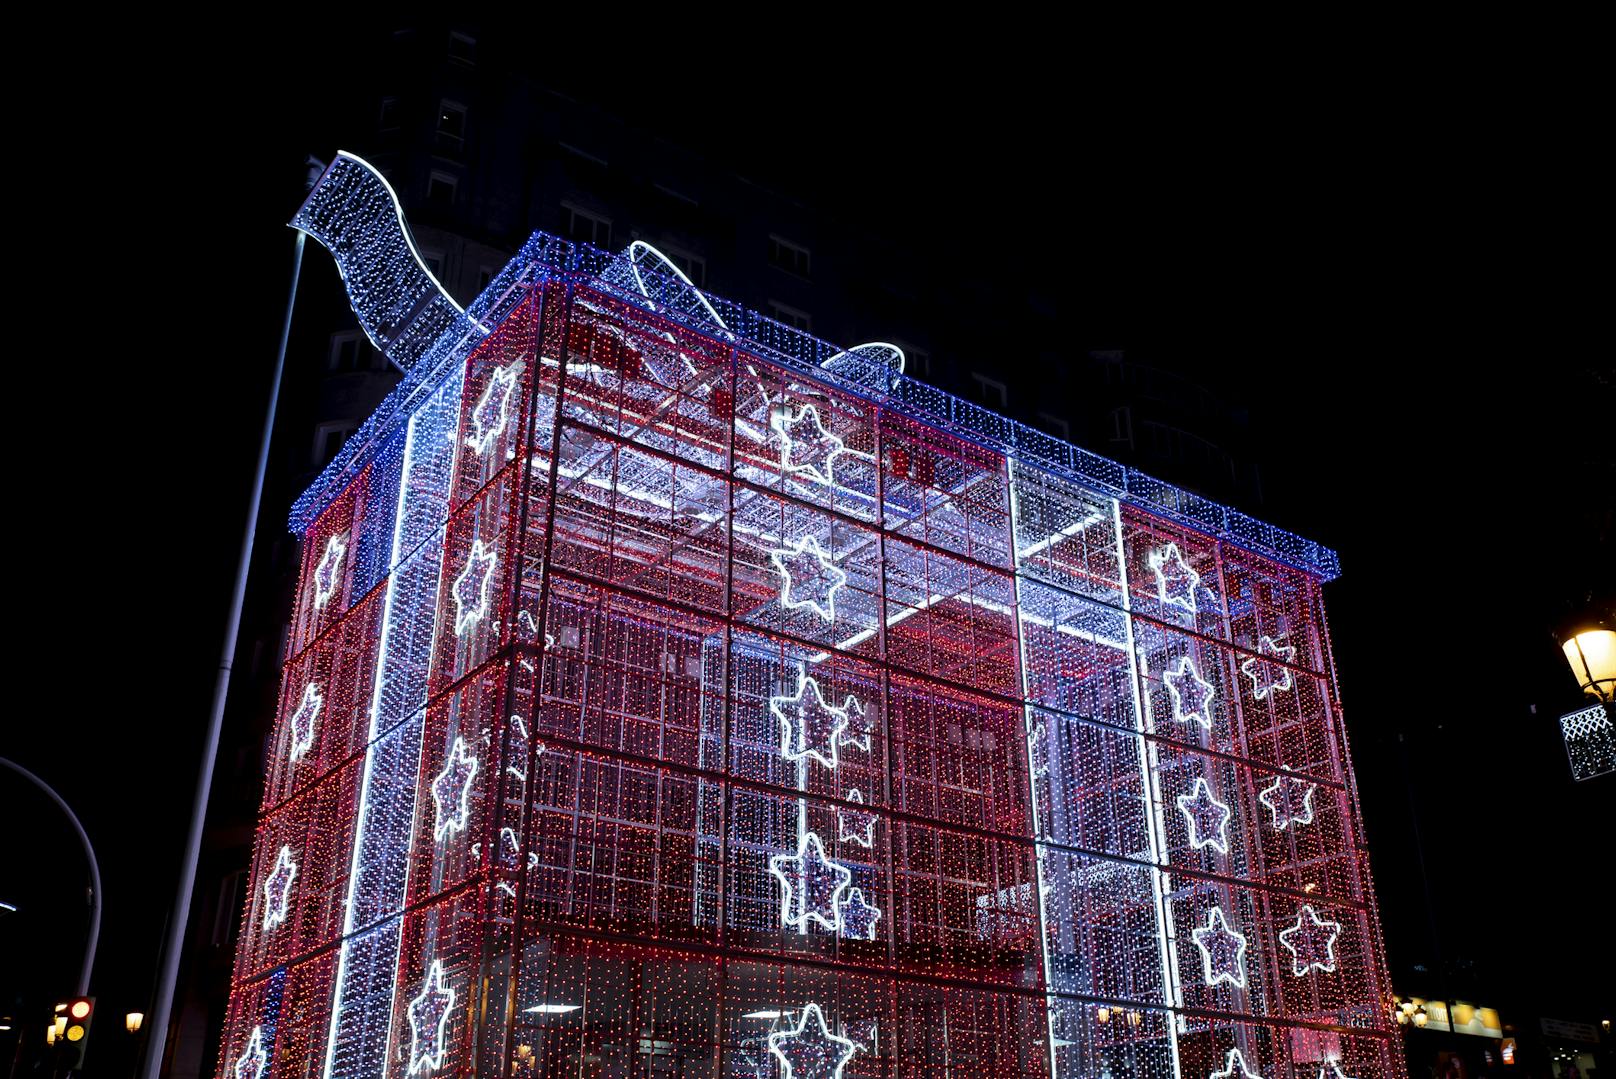 Die spanische Stadt Vigo ist eine beliebte Destination für weihnachtliche Lichterspiele.